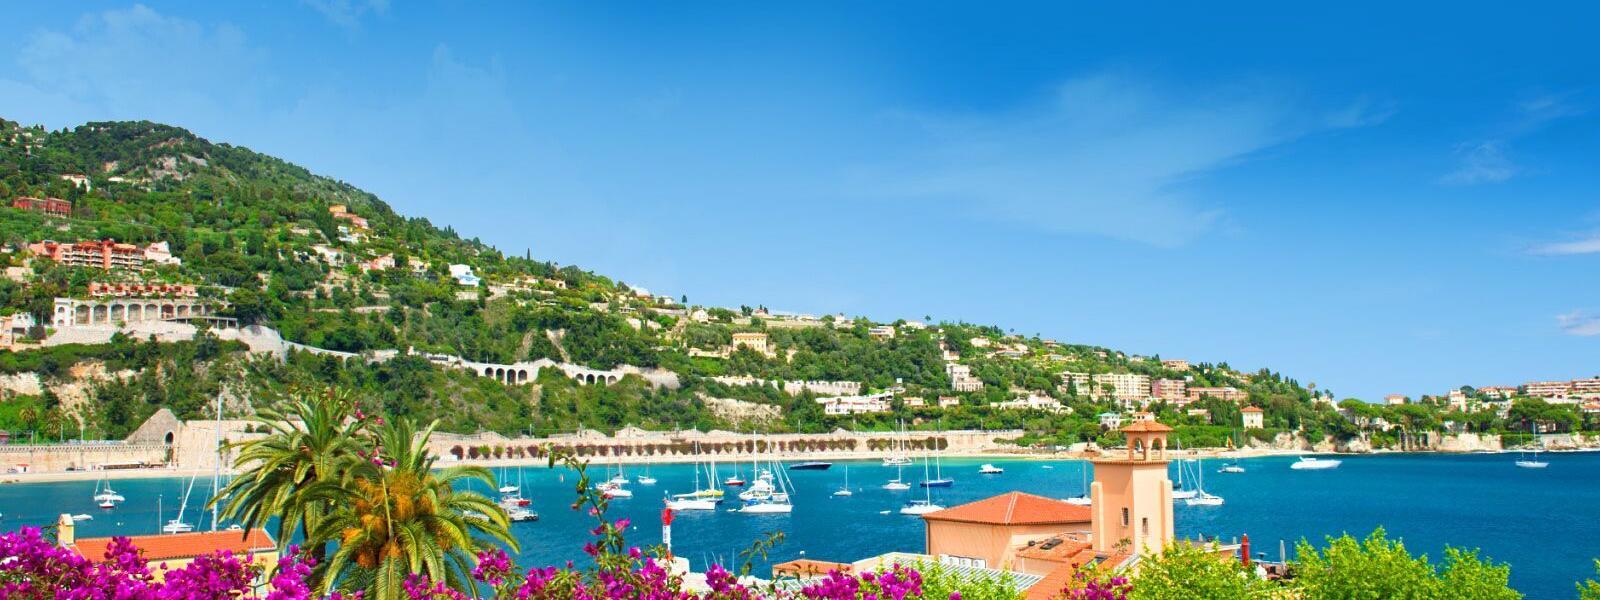 Ferienwohnungen und Ferienhäuser in Nizza - e-domizil